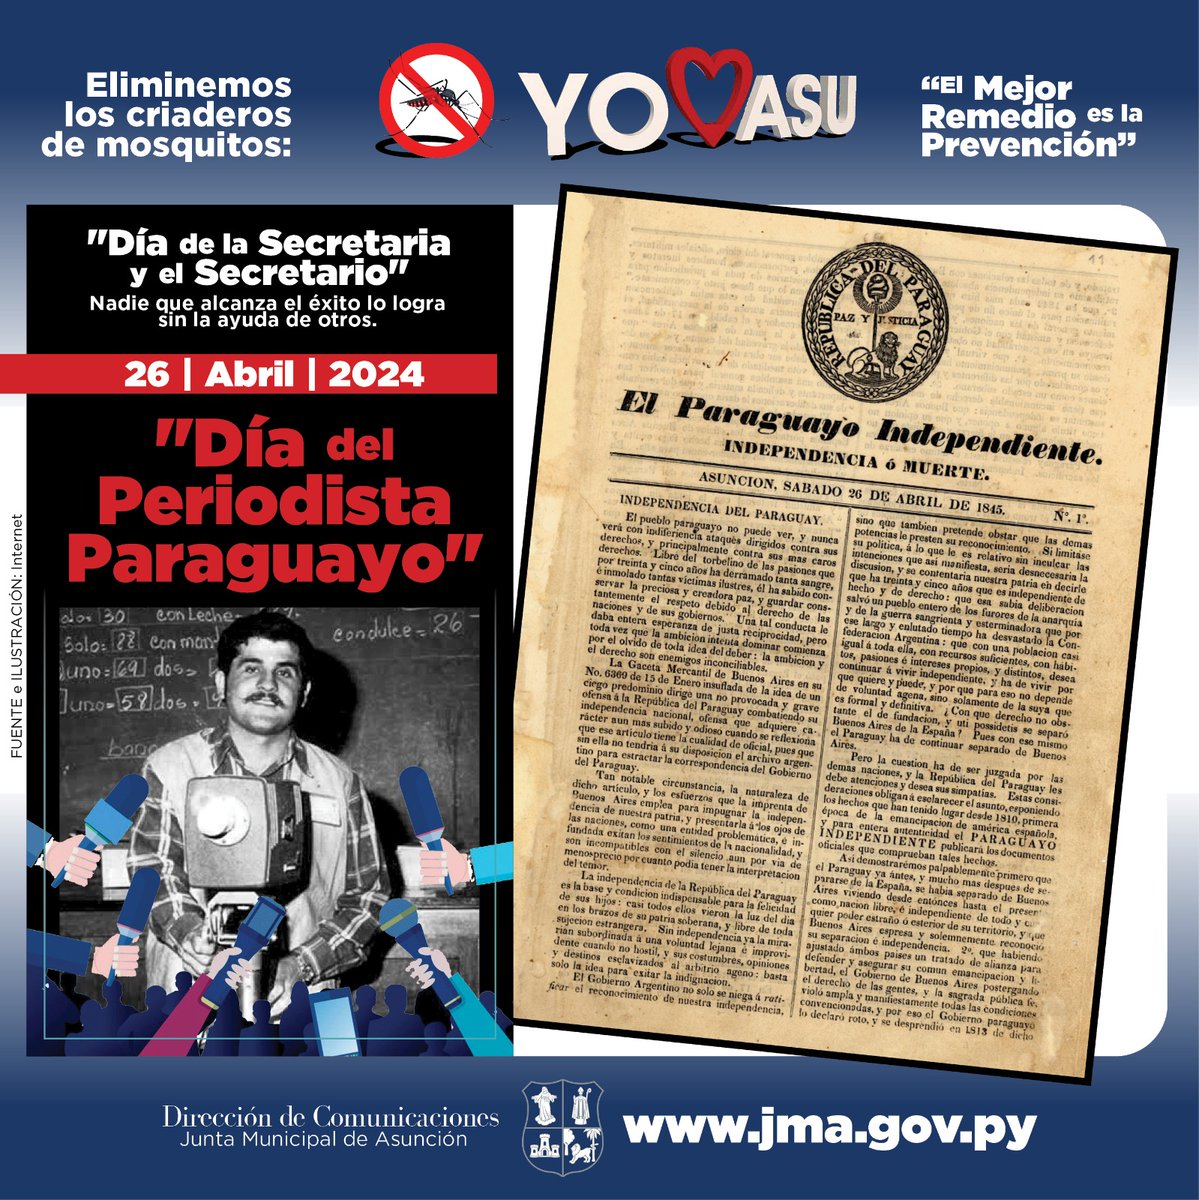 El día del periodista se conmemora cada 26 de abril, en alusión a la fecha de aparición del primer periódico en nuestro país: “El Paraguayo independiente”, publicado el 26 de abril de 1845, durante la presidencia de Don Carlos Antonio López.